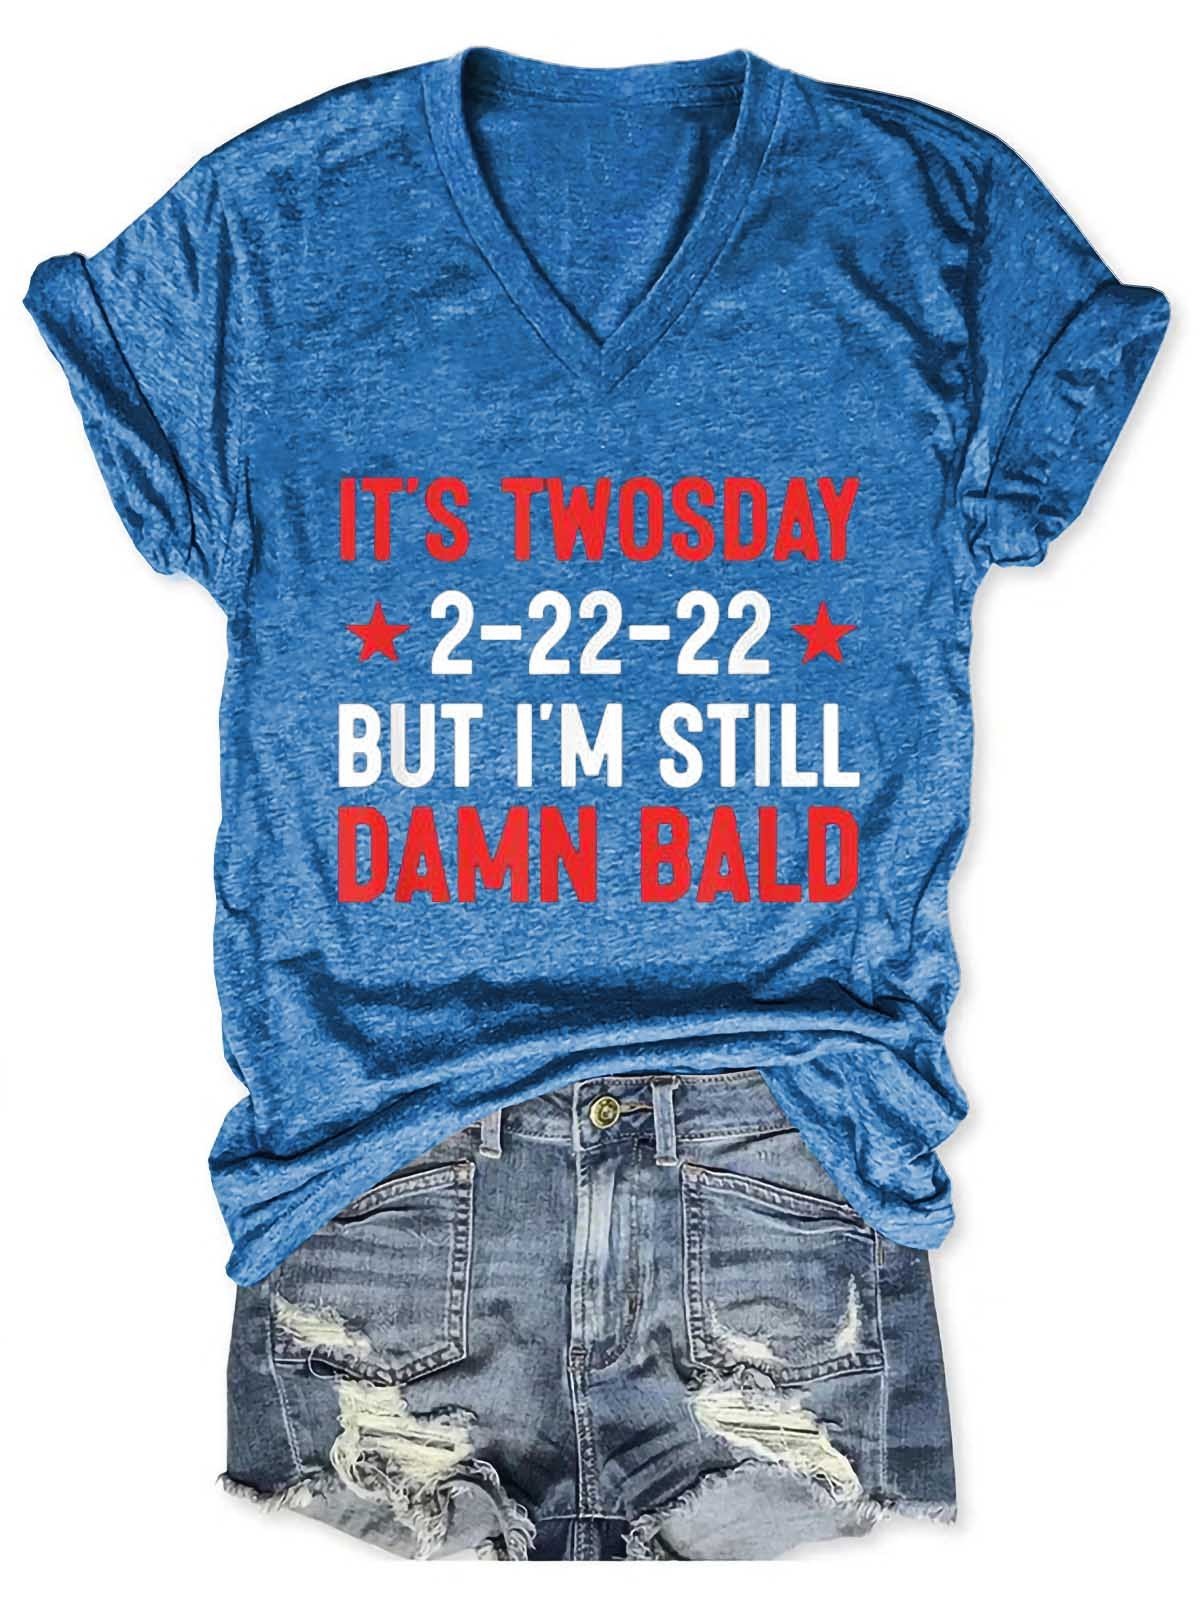 Women's It’s Twosday 2-22-22, But I’m Still Damn Bald  V-Neck T-Shirt - Outlets Forever